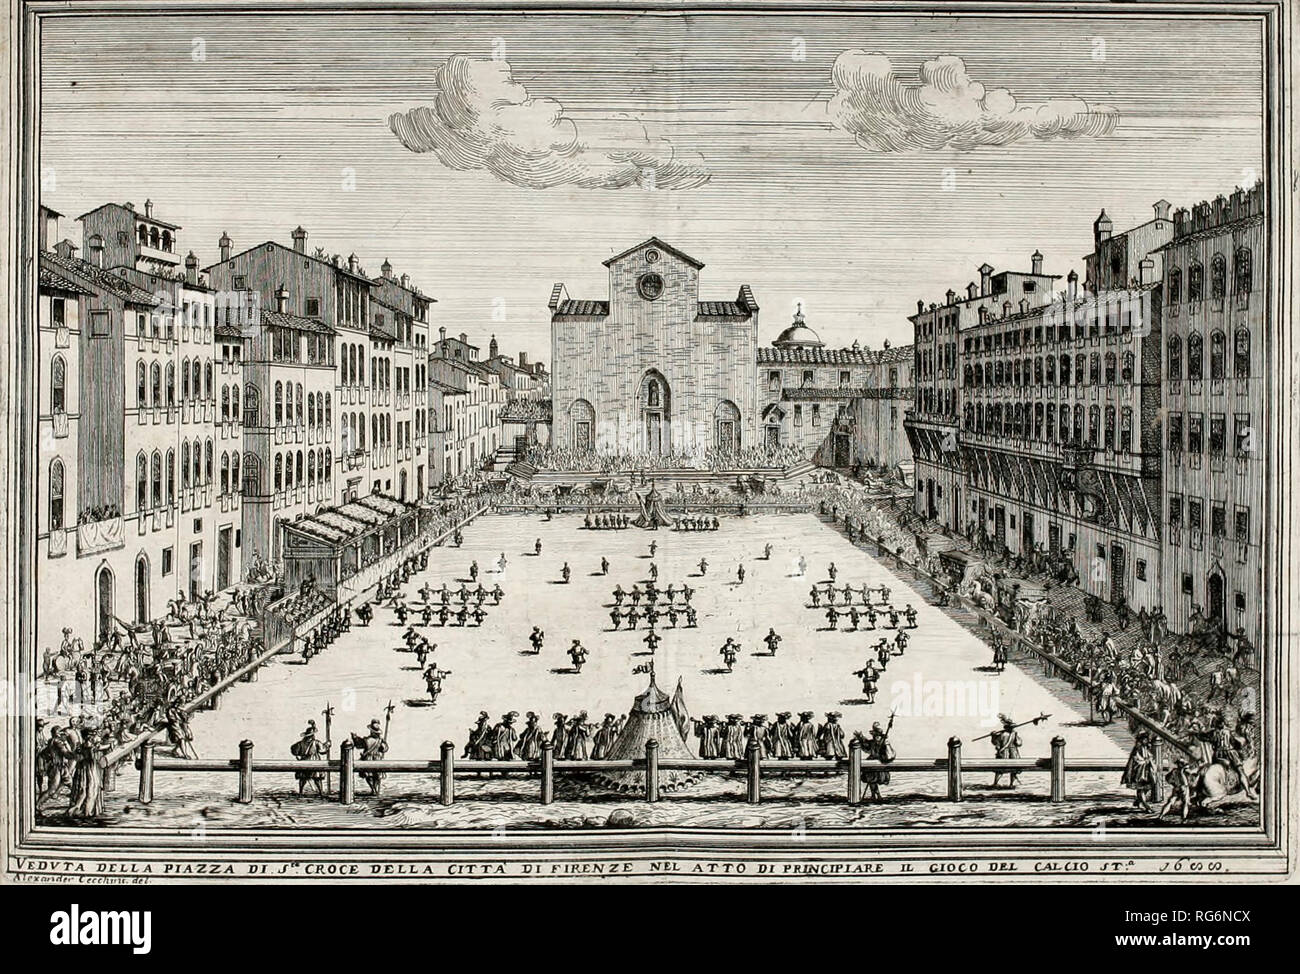 Ein Calcio Fiorentino (historisches Fußball) gespielt an der Piazza Santa Croce, Florenz, Italien, ca. 1688 Stockfoto